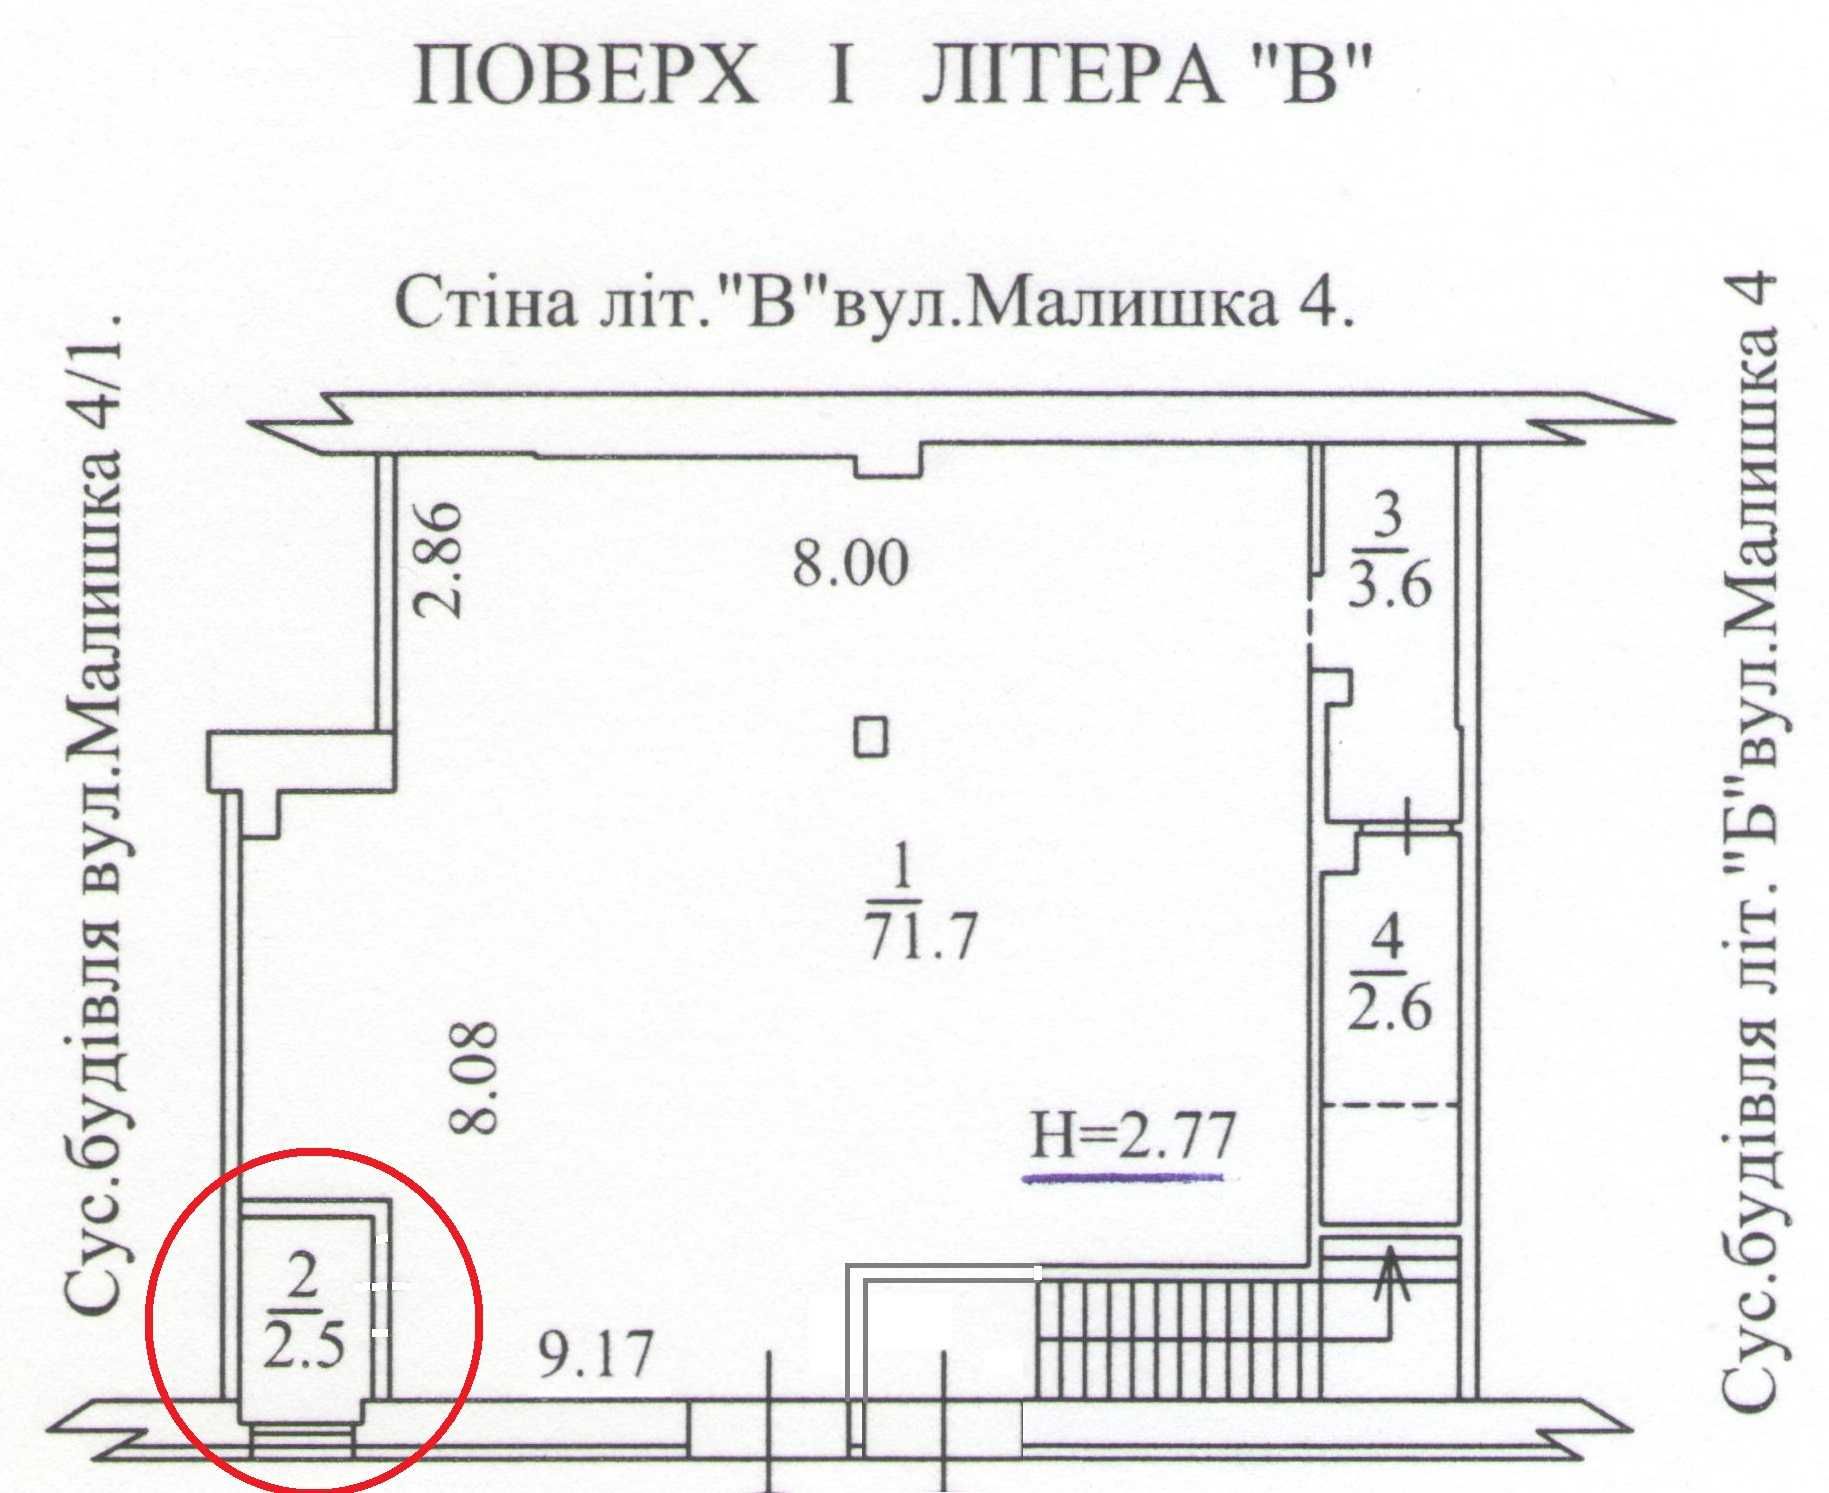 Оренда приміщення 2,5м2 біля виходу з метро Дарниця. Власник. Без %